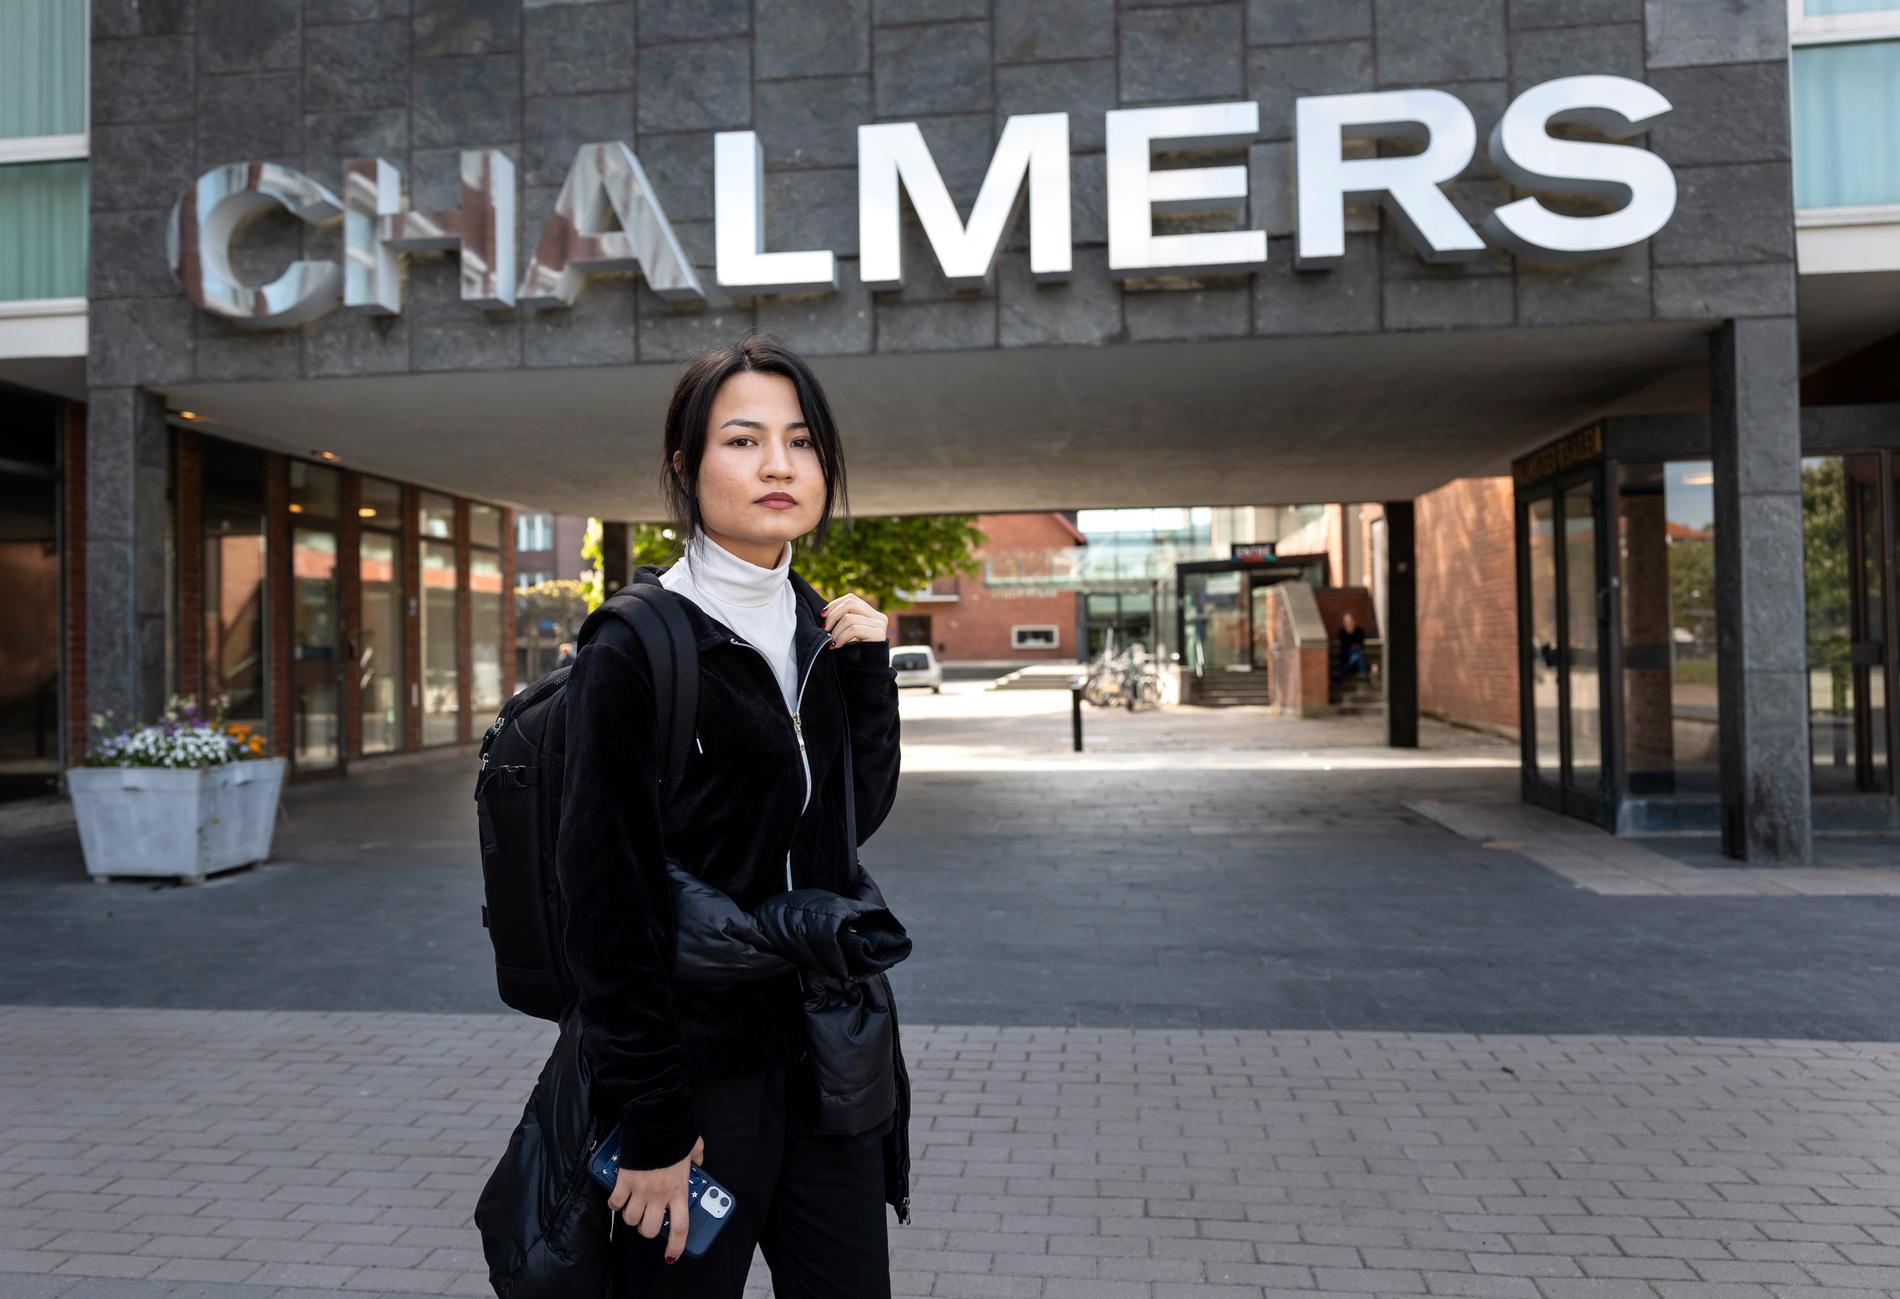 Chalmersstudenten Sahar Soltani, 22, och hennes familj kom till Sverige 2015. Nu ska de utvisas till Afghanistan.